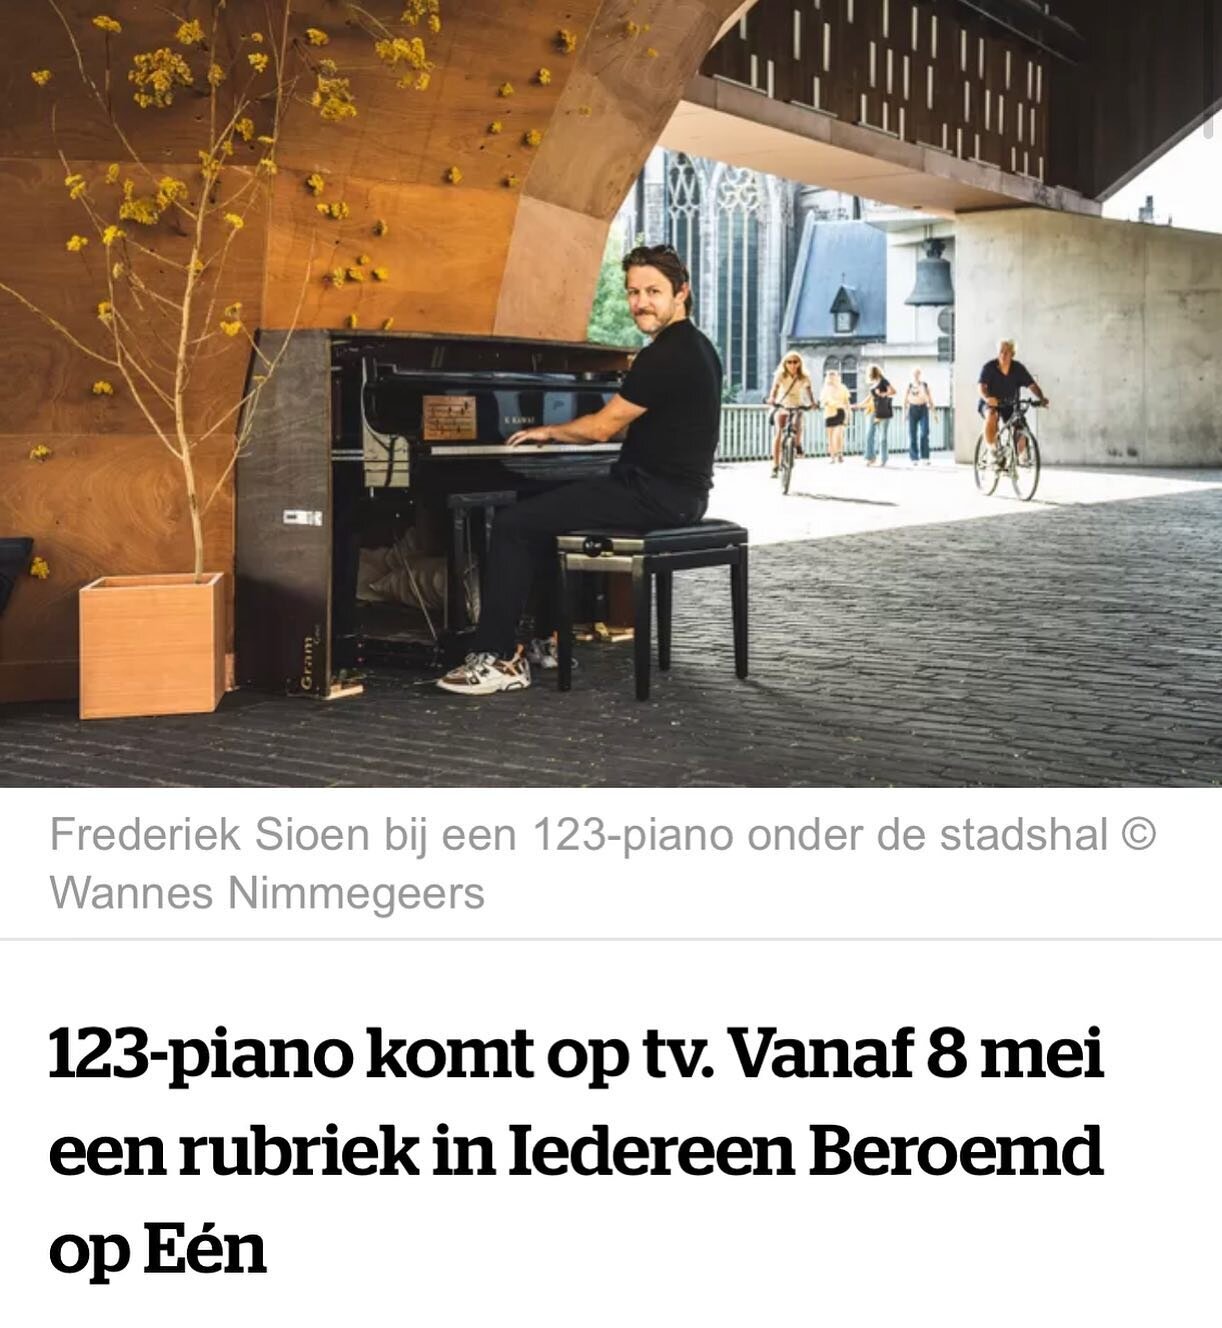 🎼GROOT @123pianogent NIEUWS - vanaf 8 mei wordt 123-piano een rubriek in Iedereen beroemd op @eenbe ❤ ❤ ❤ 🎹

&quot;Overal in Gent staan piano&rsquo;s, waar toevallige voorbijgangers op kunnen tokkelen. &lsquo;123 piano&rsquo; brengt deze gelegenhei